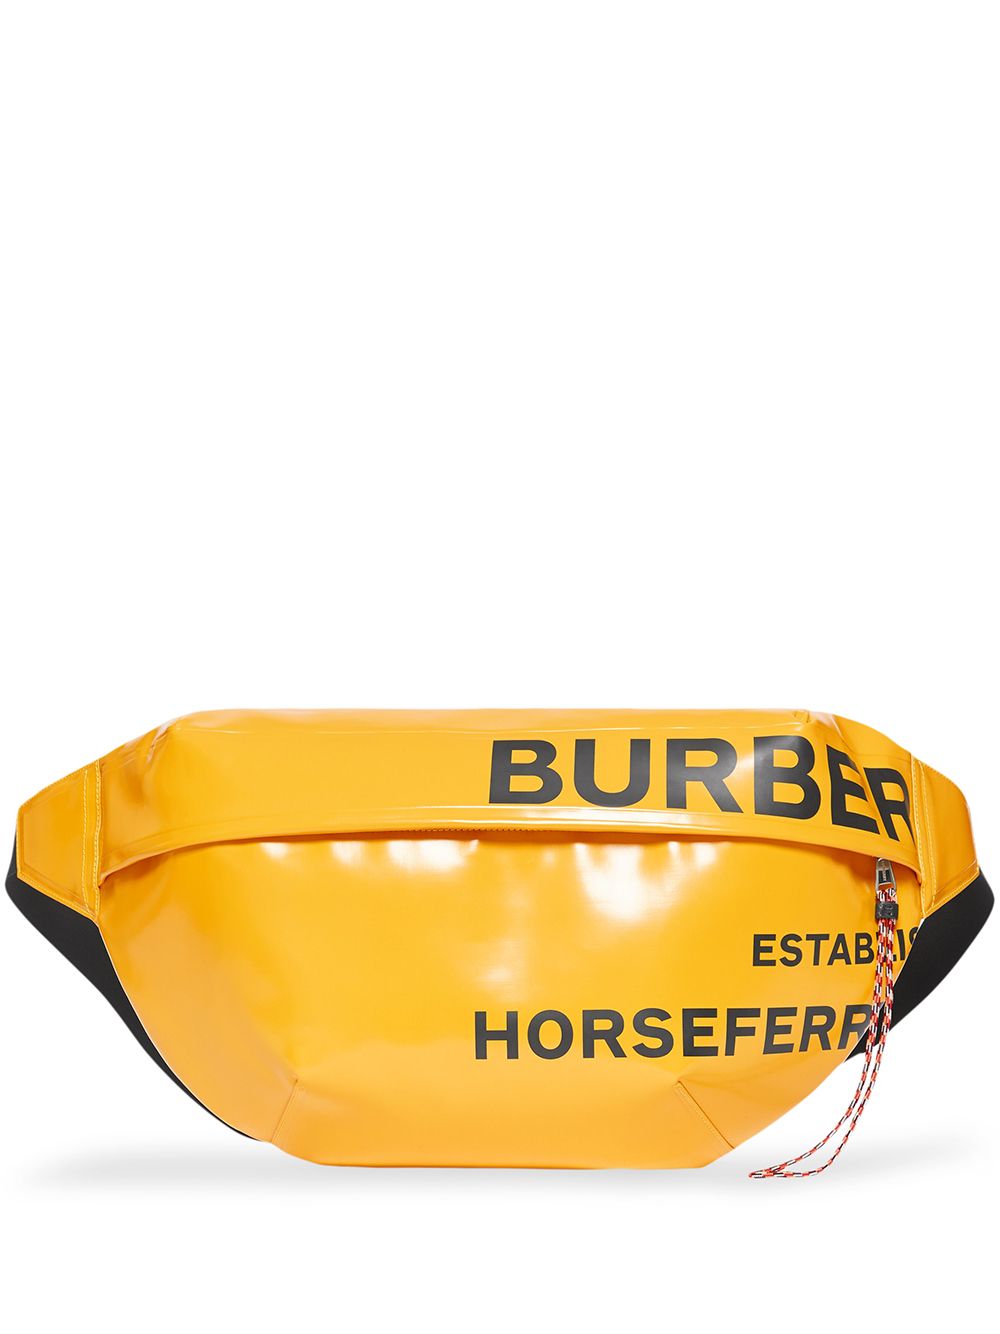 фото Burberry поясная сумка с принтом horseferry